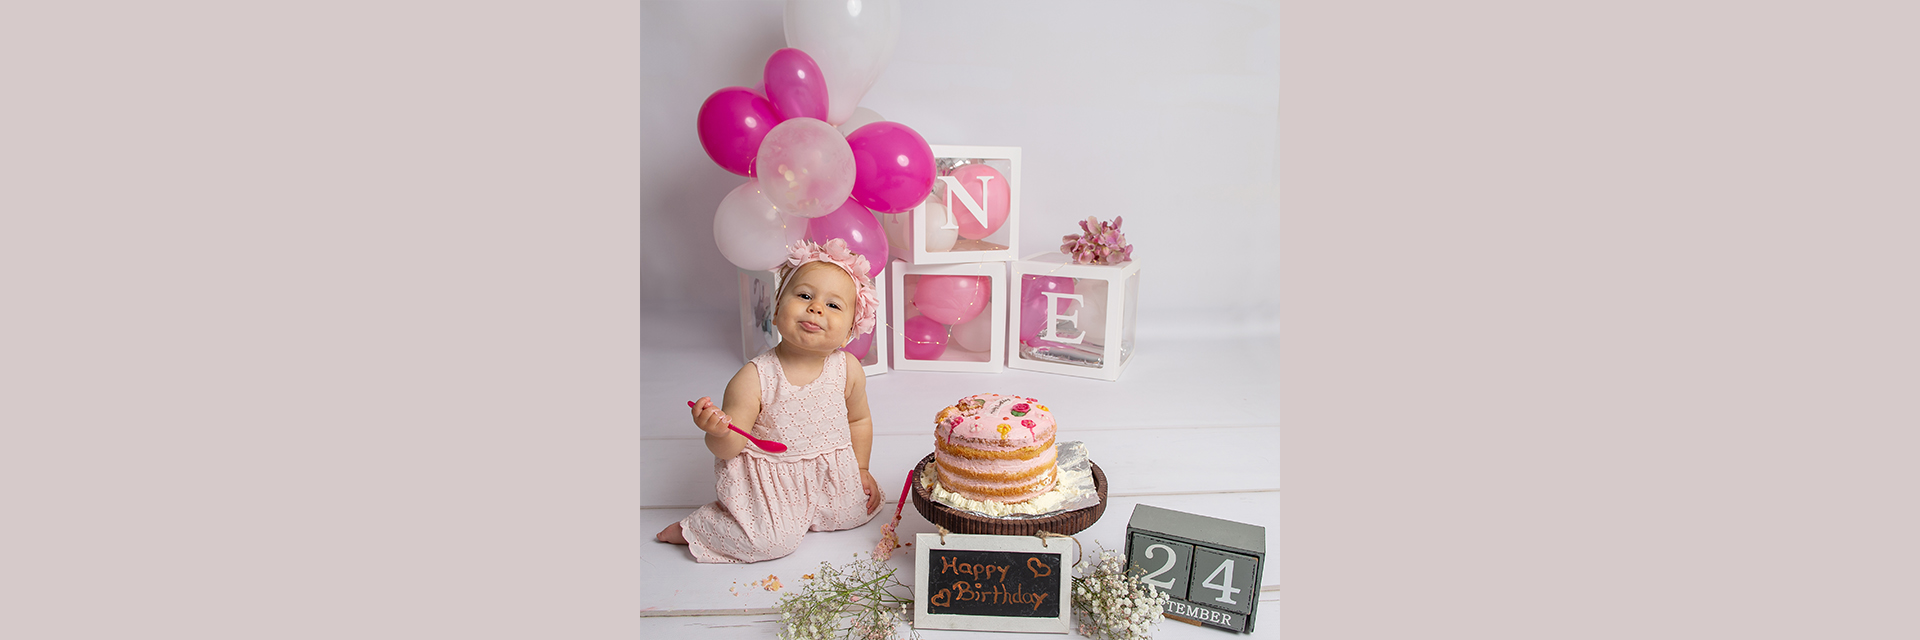 Cake-Smash-Shooting zum ersten Geburtstag mit Mädchen und rosa Torte